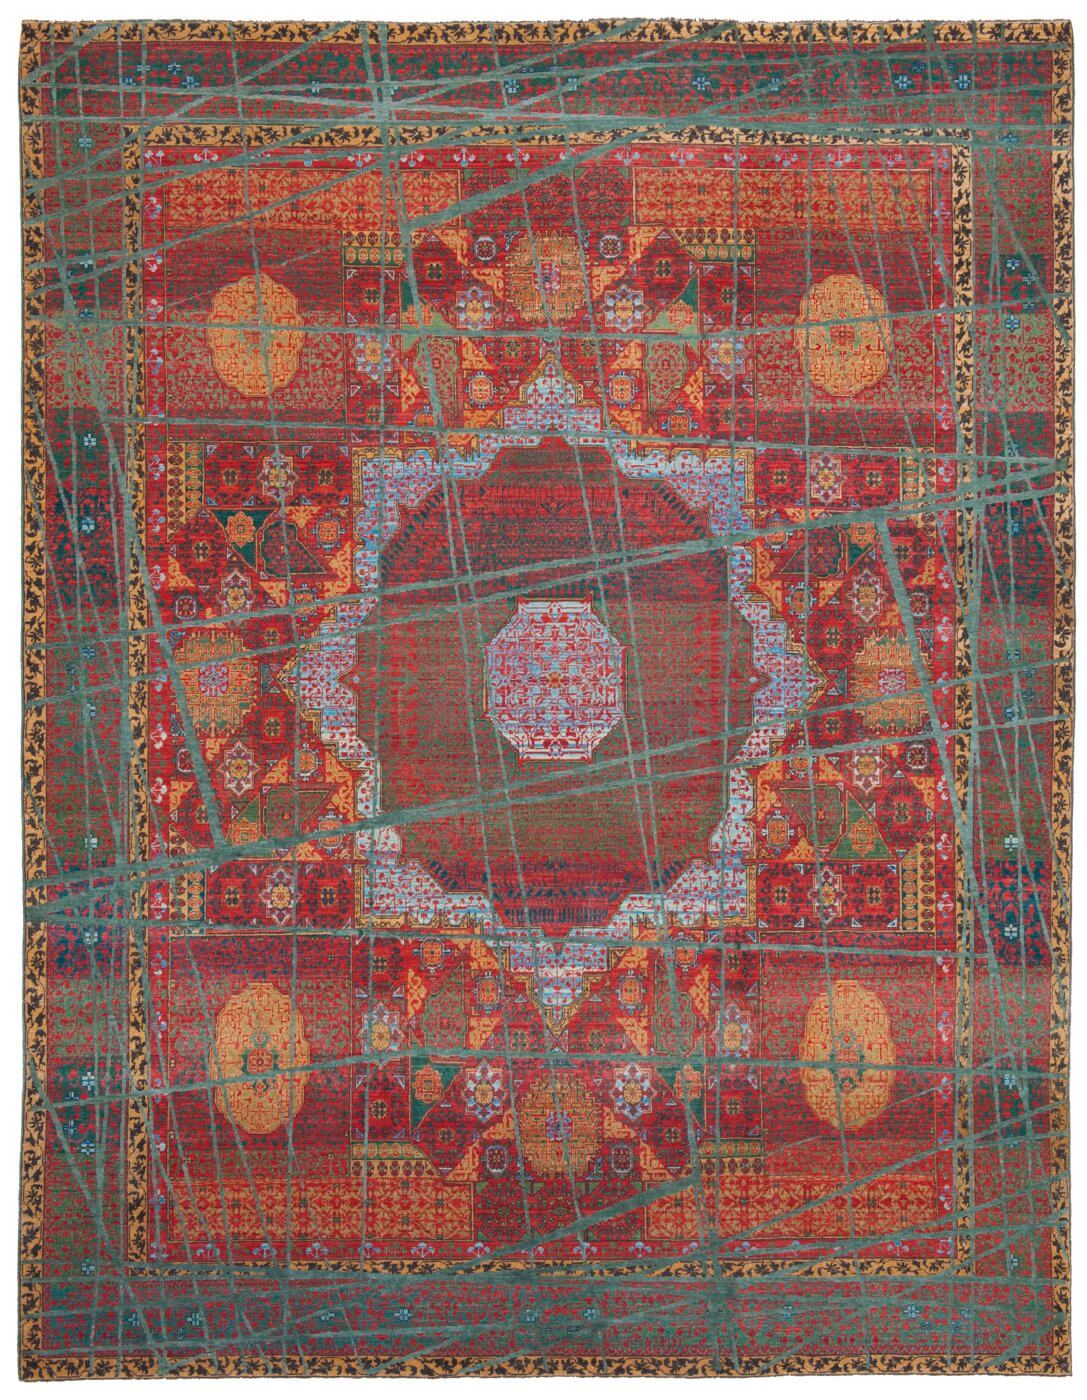 Mamluk Hand-woven Wool Luxury Rug ☞ Size: 300 x 400 cm